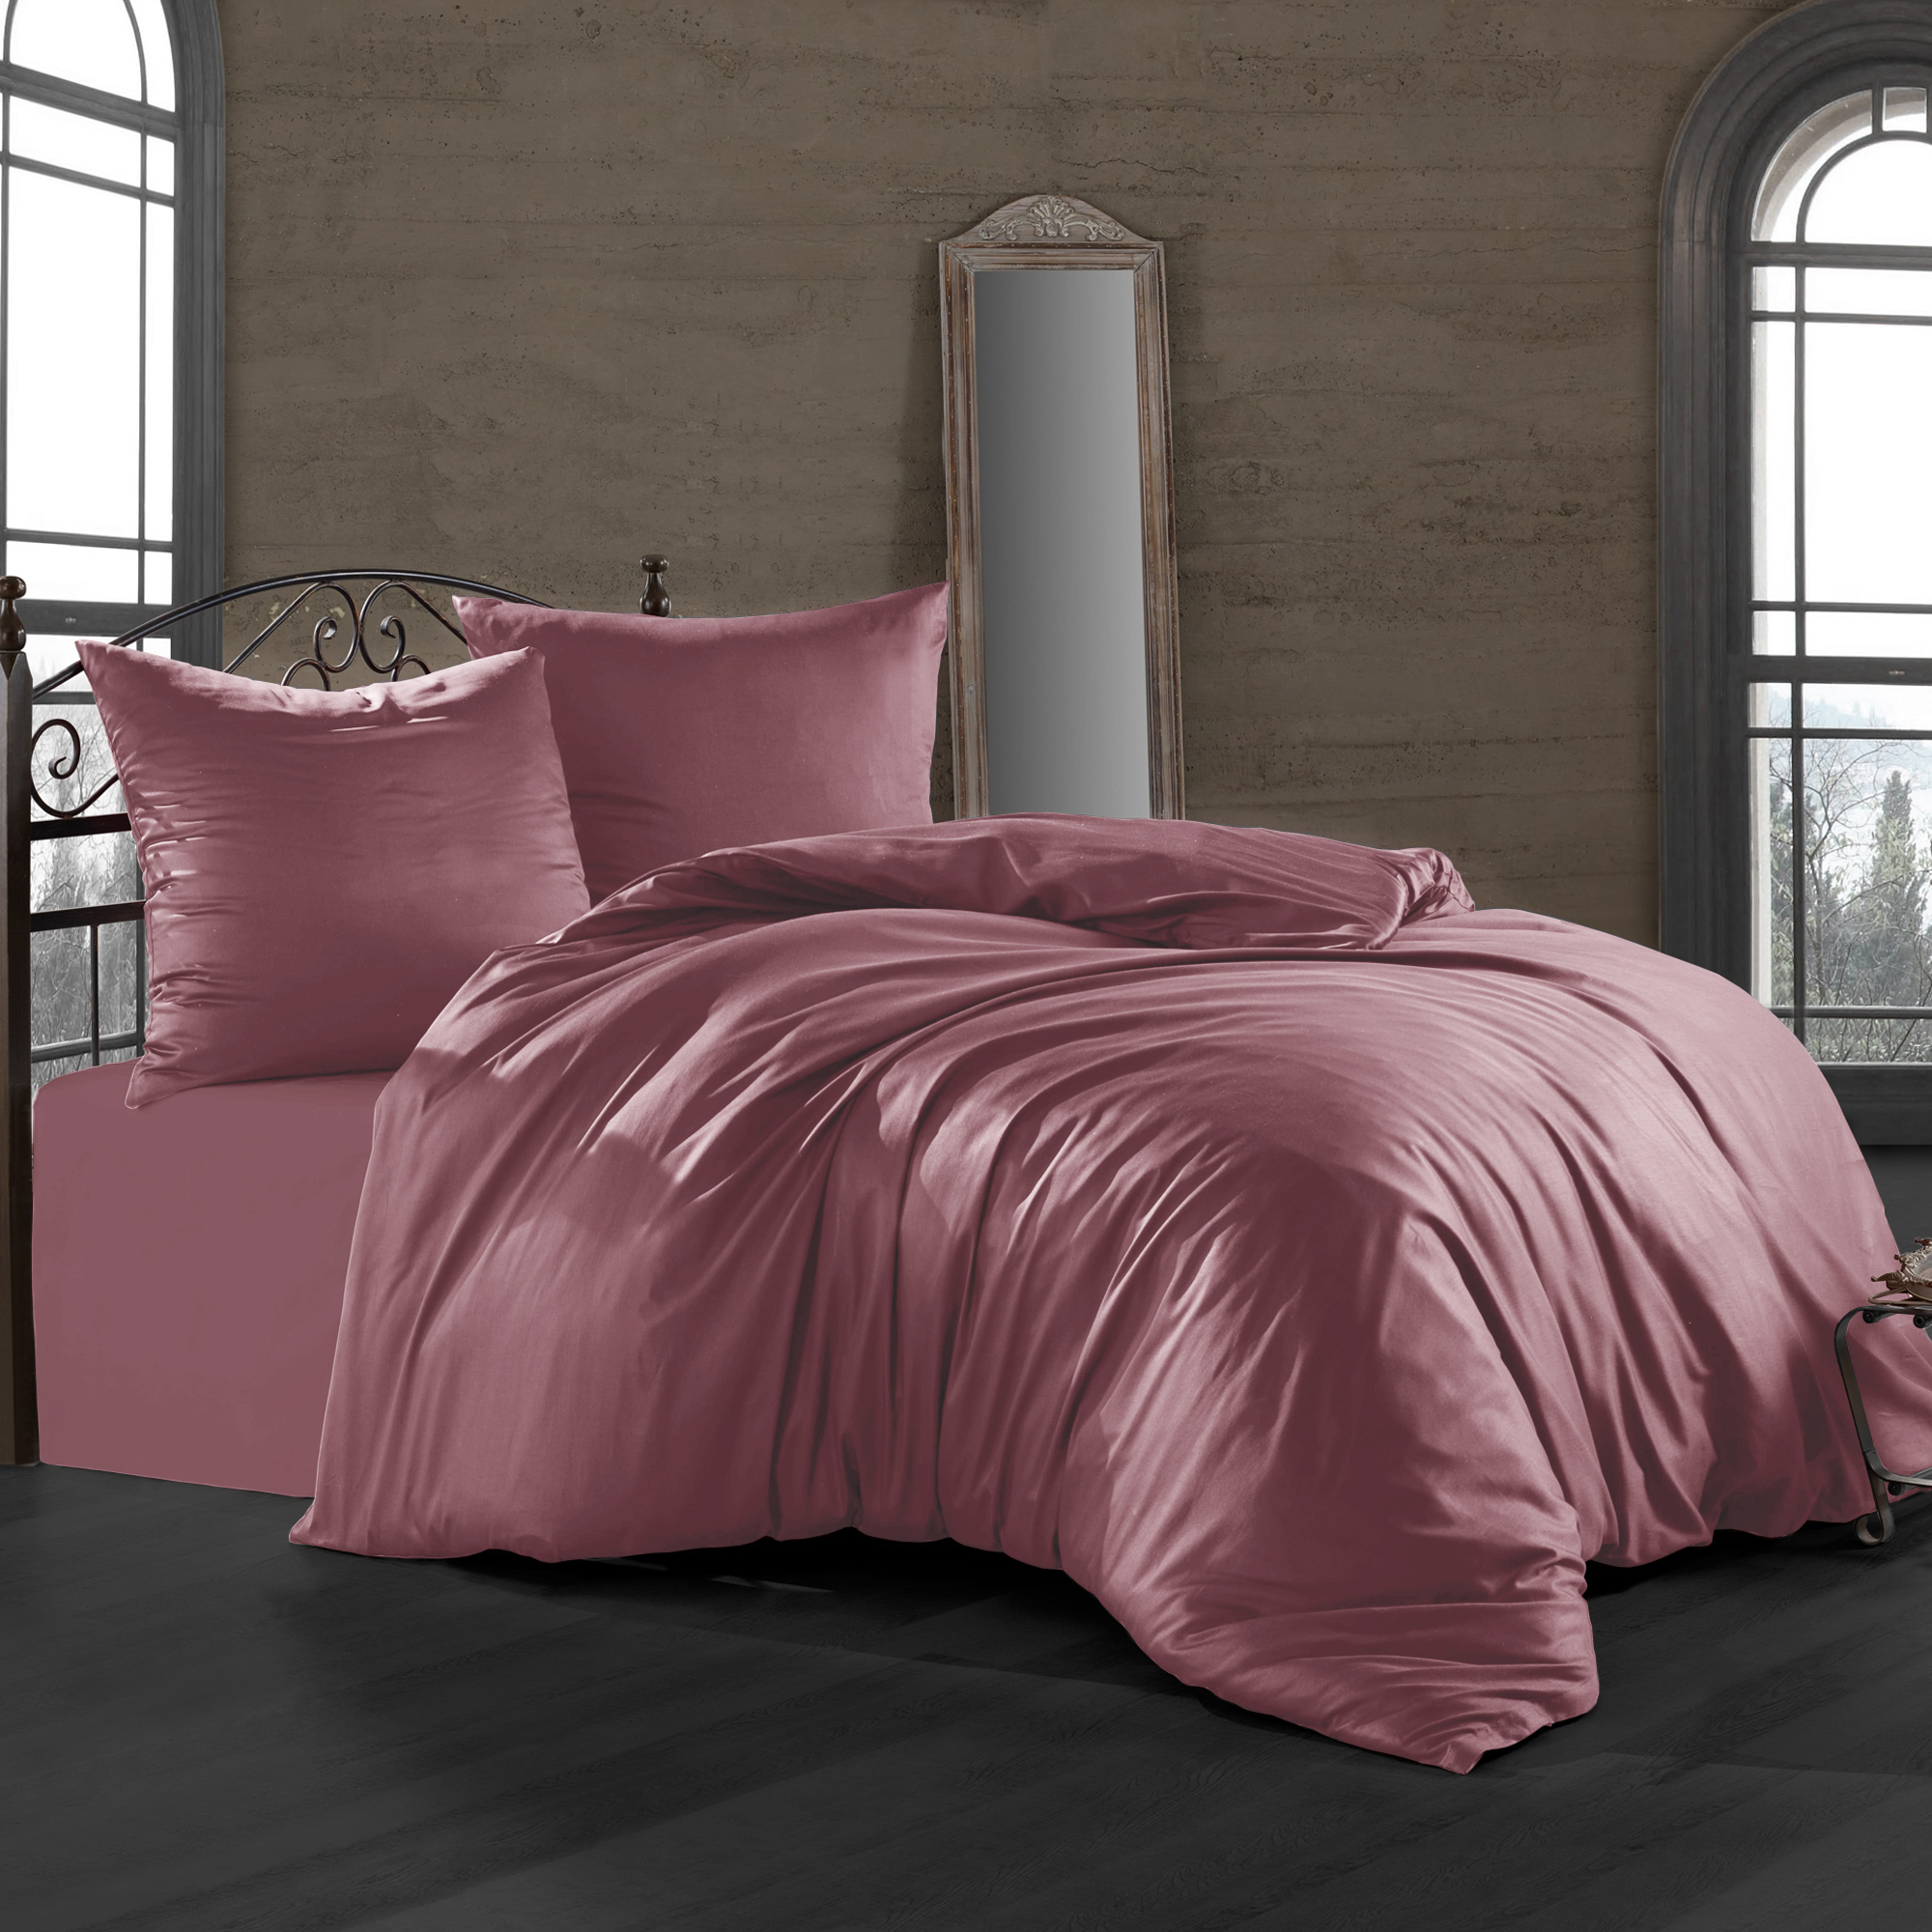 Комплект постельного белья Bahar пепельно-розовый Семейный/дуэт комплект постельного белья bahar пепельно розовый семейный дуэт